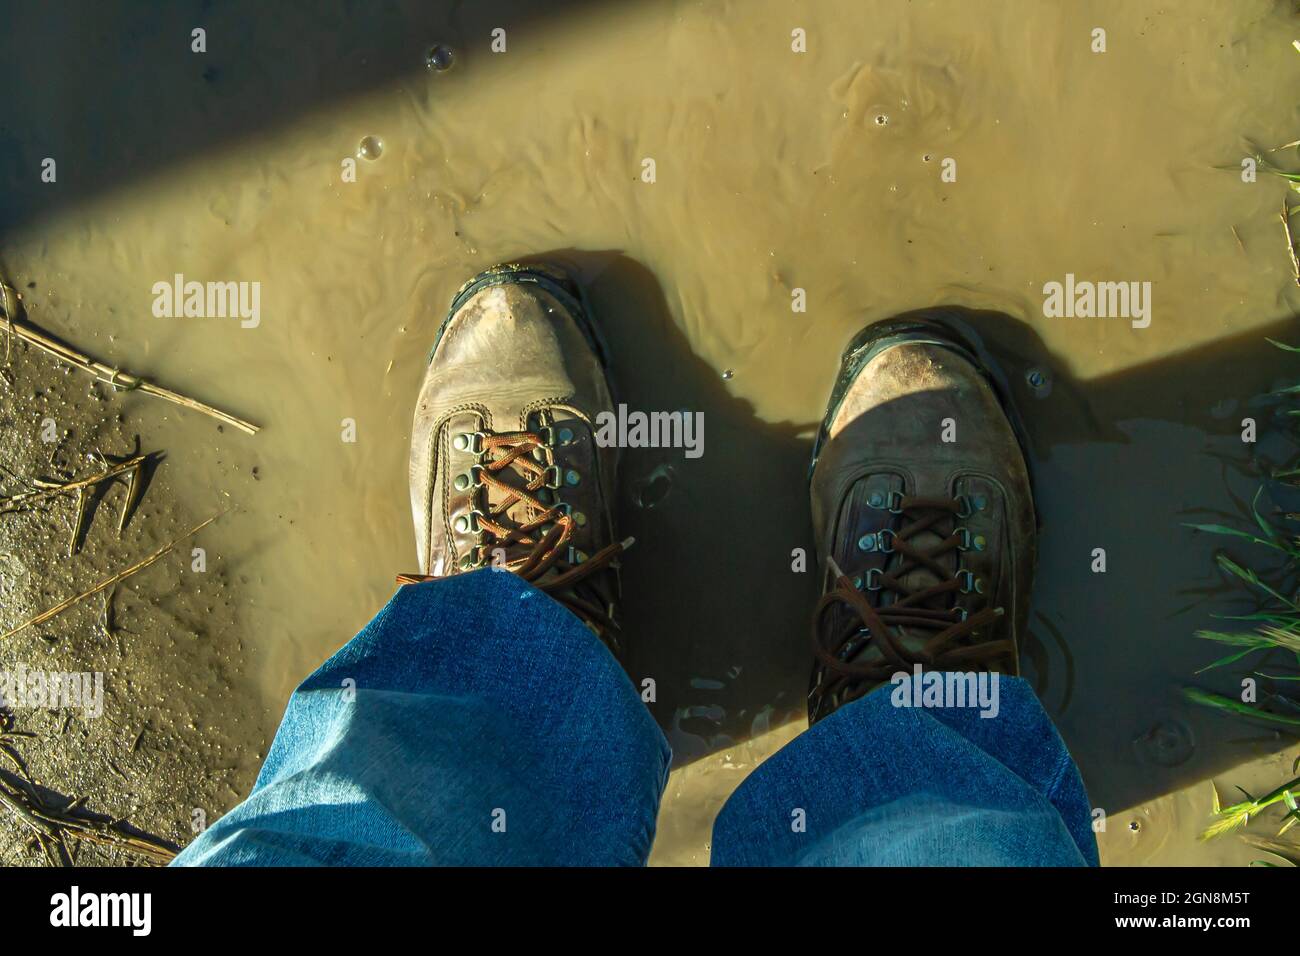 Chaussures de randonnée sur la piste dans l'eau boueuse photo libre de droits Banque D'Images